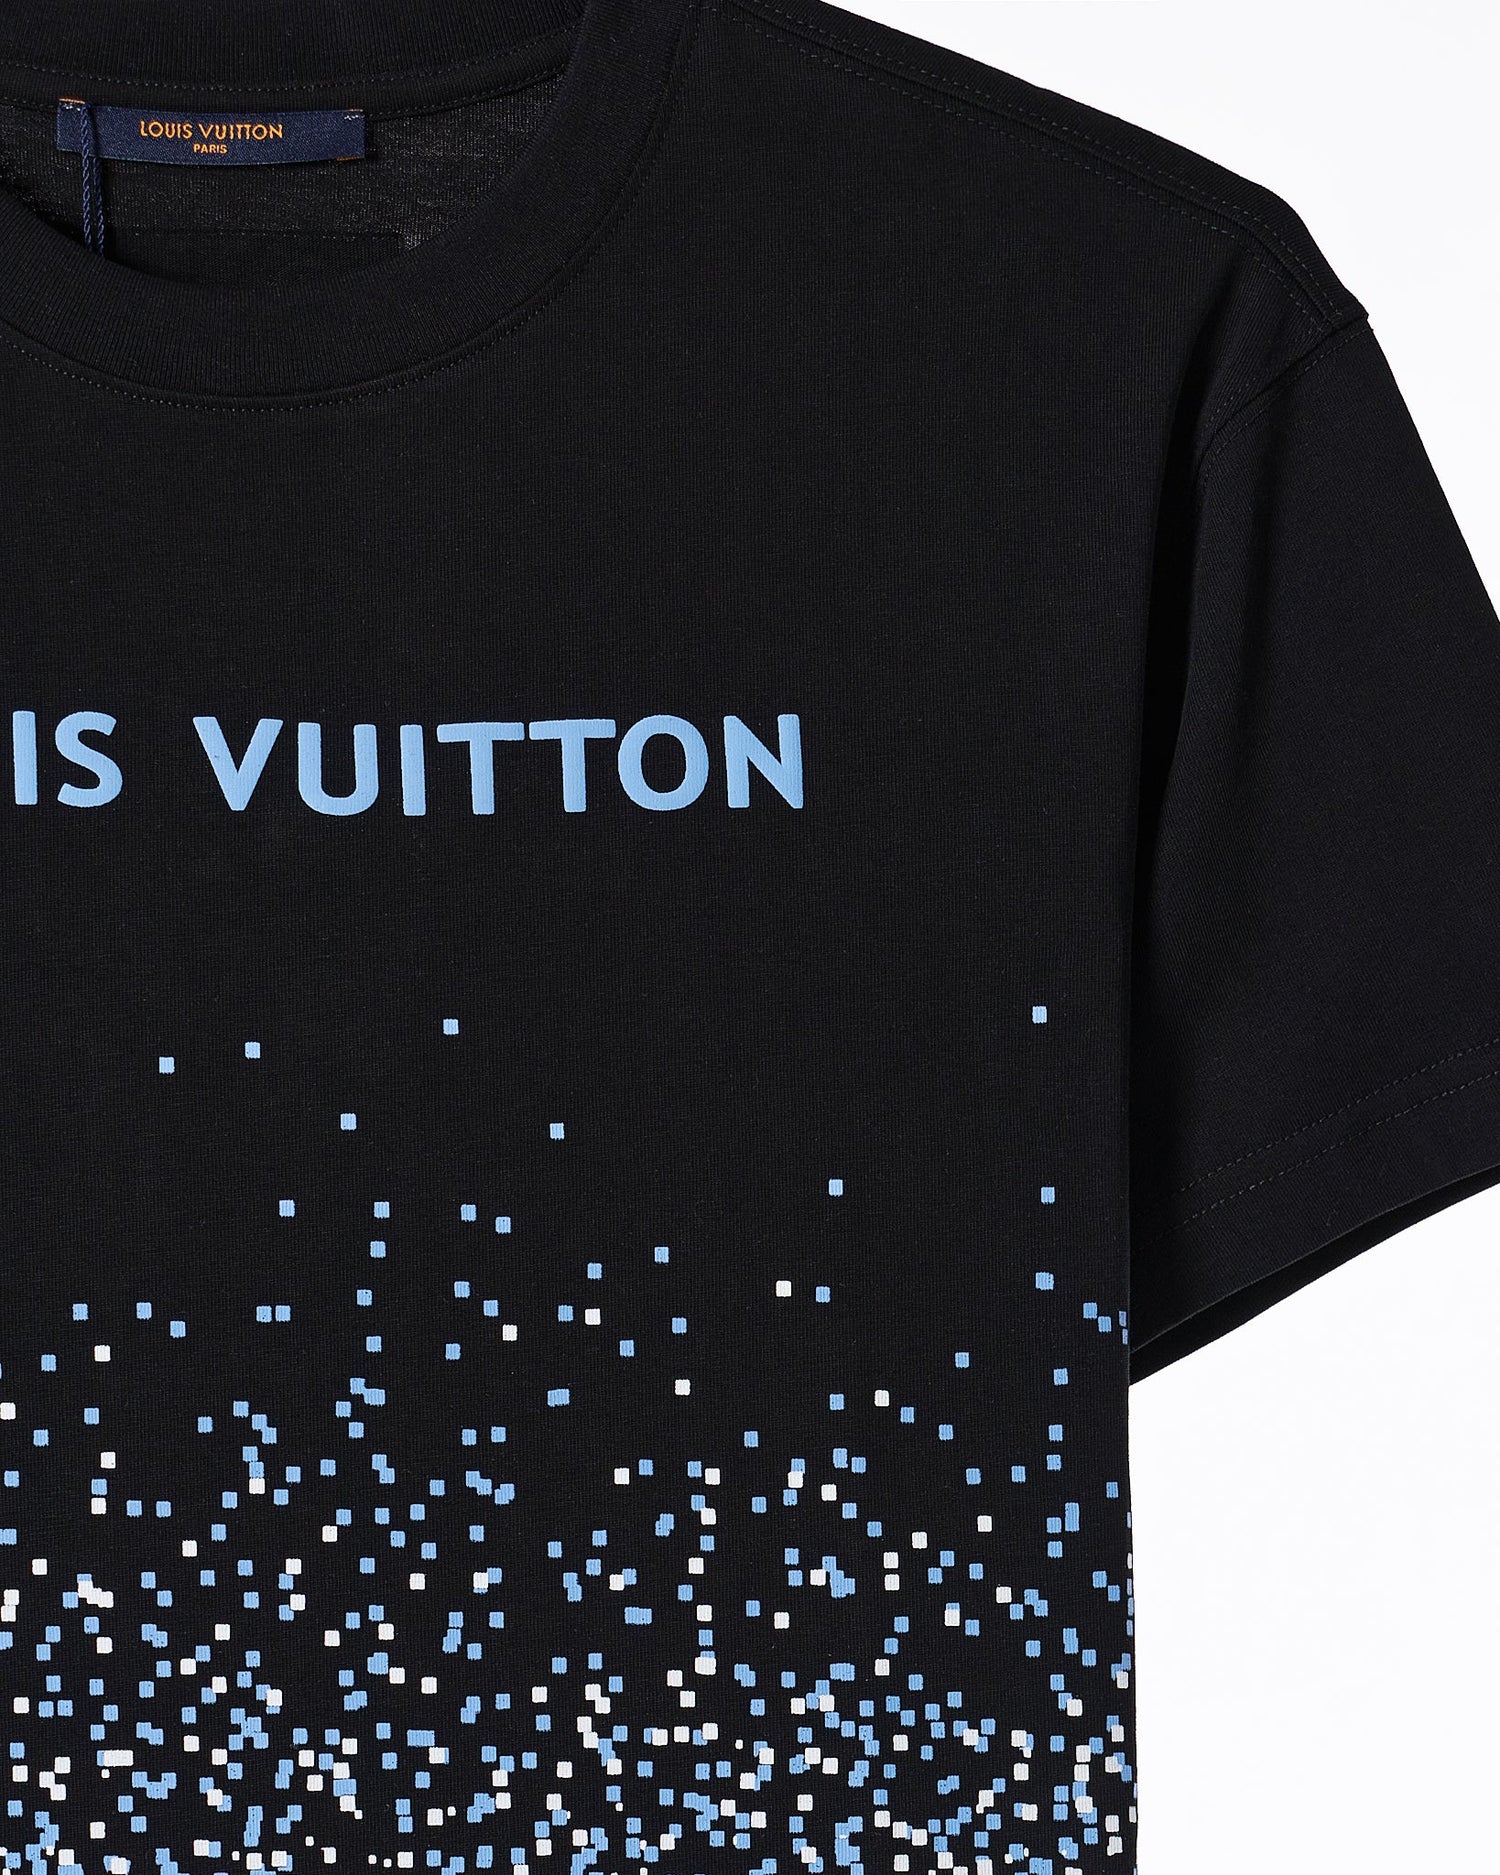 LV Monogram Velvet Over Printed Men T-Shirt 54.90 - MOI OUTFIT